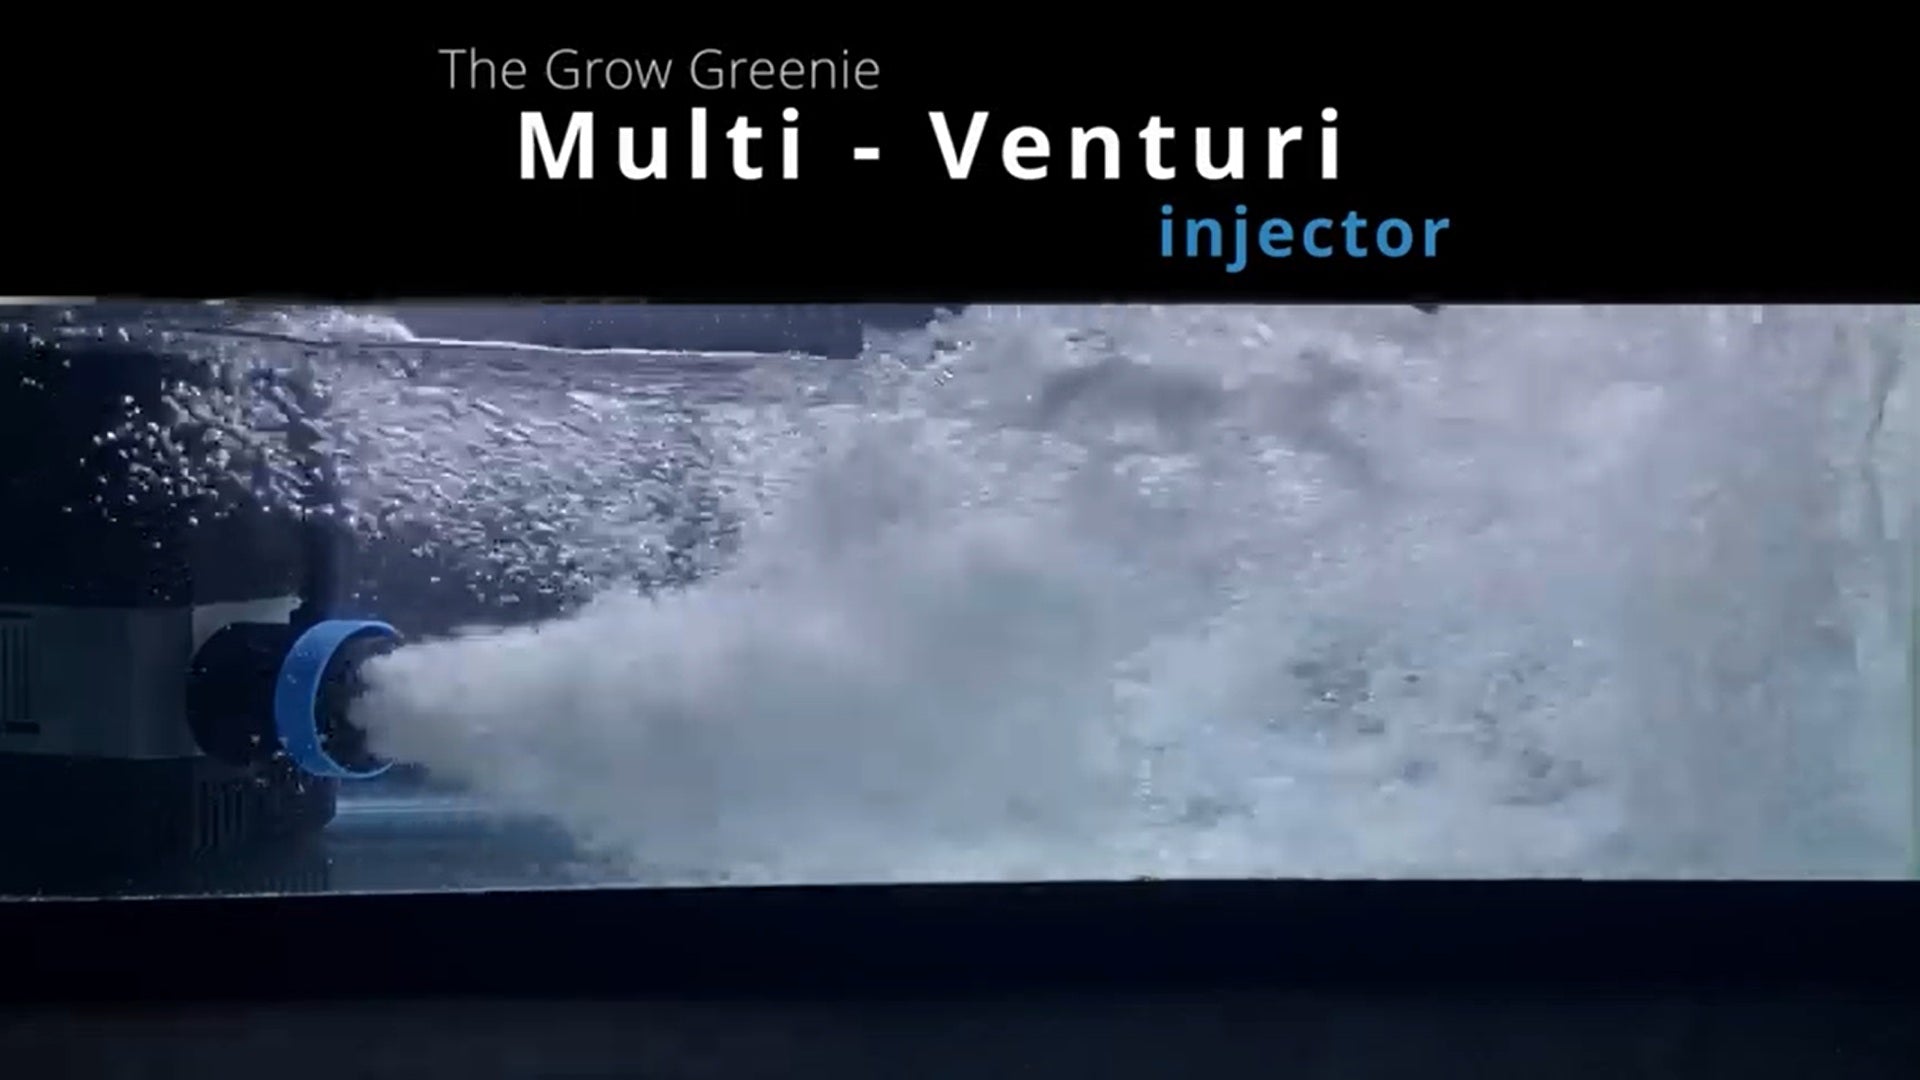 वीडियो लोड करें: ग्रो ग्रीनी मल्टी वेंचुरी आउट एकल पारंपरिक वेंचुरी नोजल का प्रदर्शन करता है